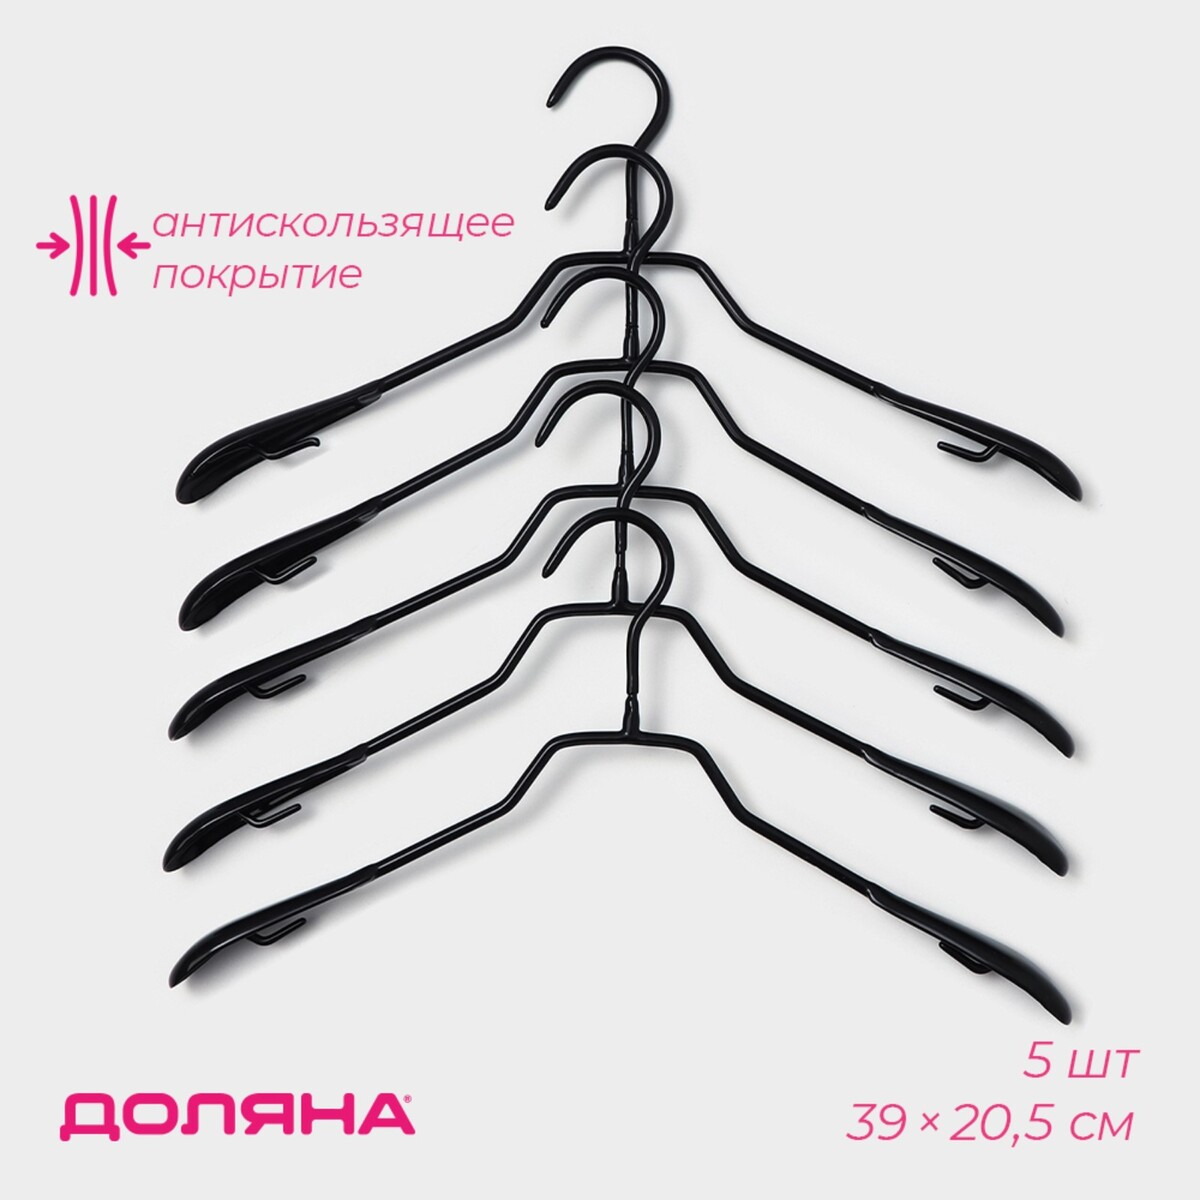 Плечики - вешалки для одежды антискользящие доляна, 39×20,5 см, 5 шт, цвет черный